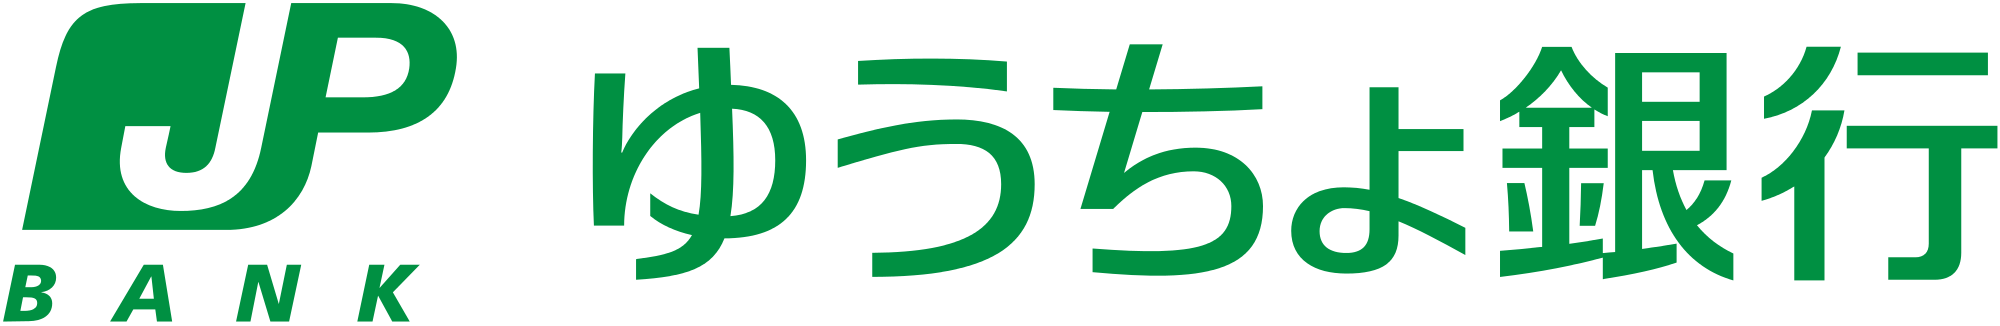 JP Bank Brand Logo